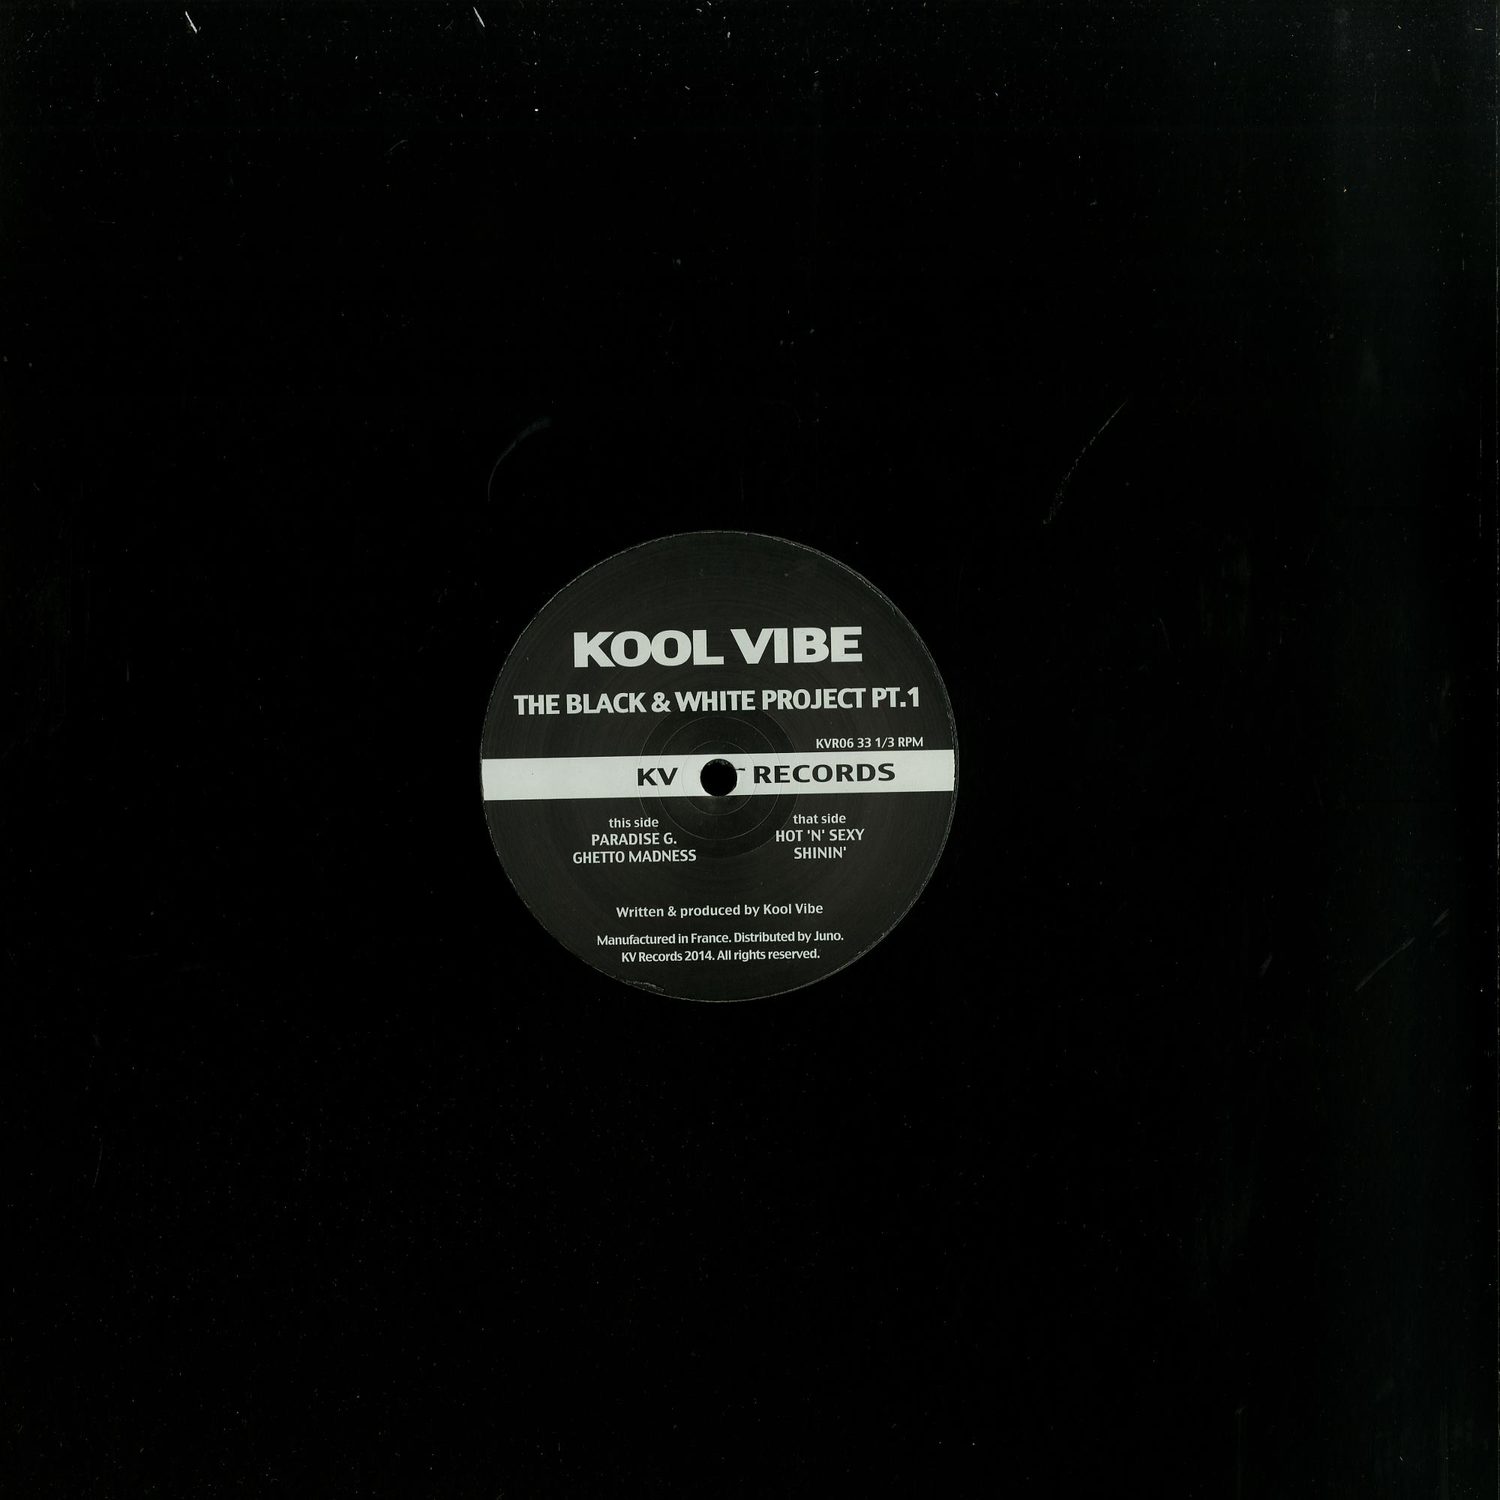 Kool Vibe - THE BLACK & WHITE PROJECT PT 1